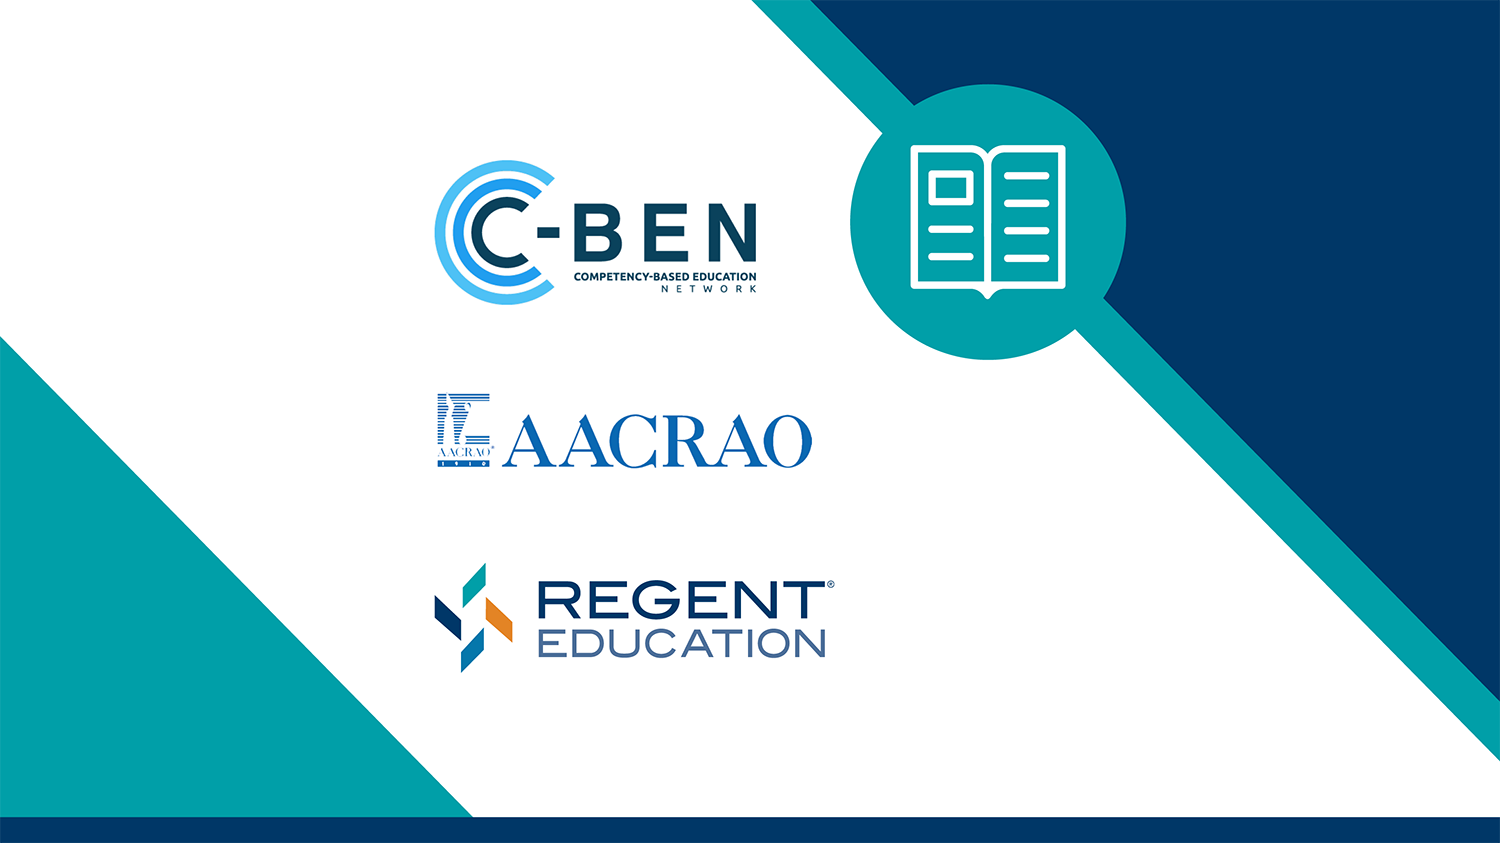 C-BEN AACRAO and Regent Education Logos